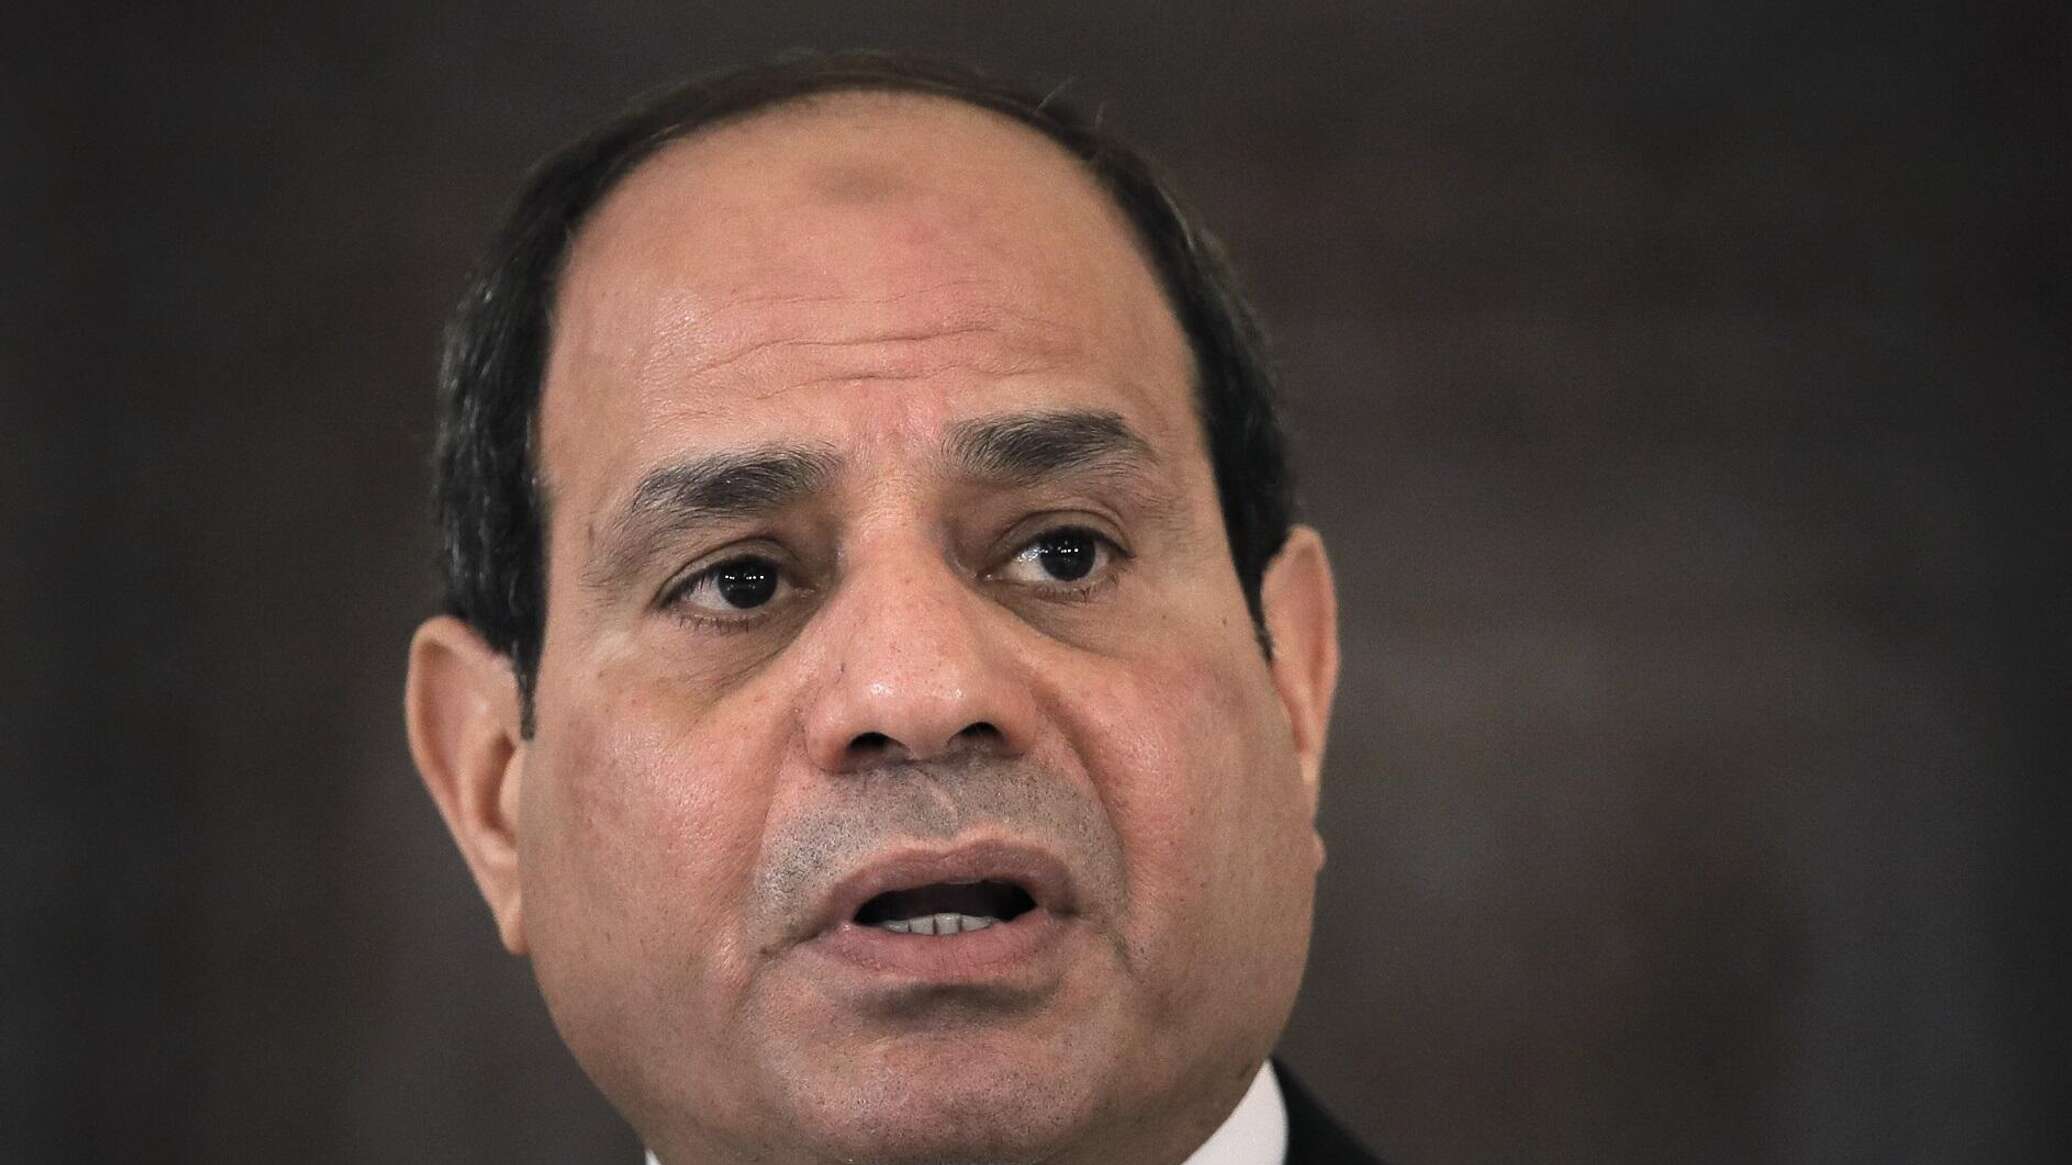 الرئيس المصري يدعو لبذل المزيد من الجهد للوصول إلى اتفاق ينهي مأساة الفلسطينيين